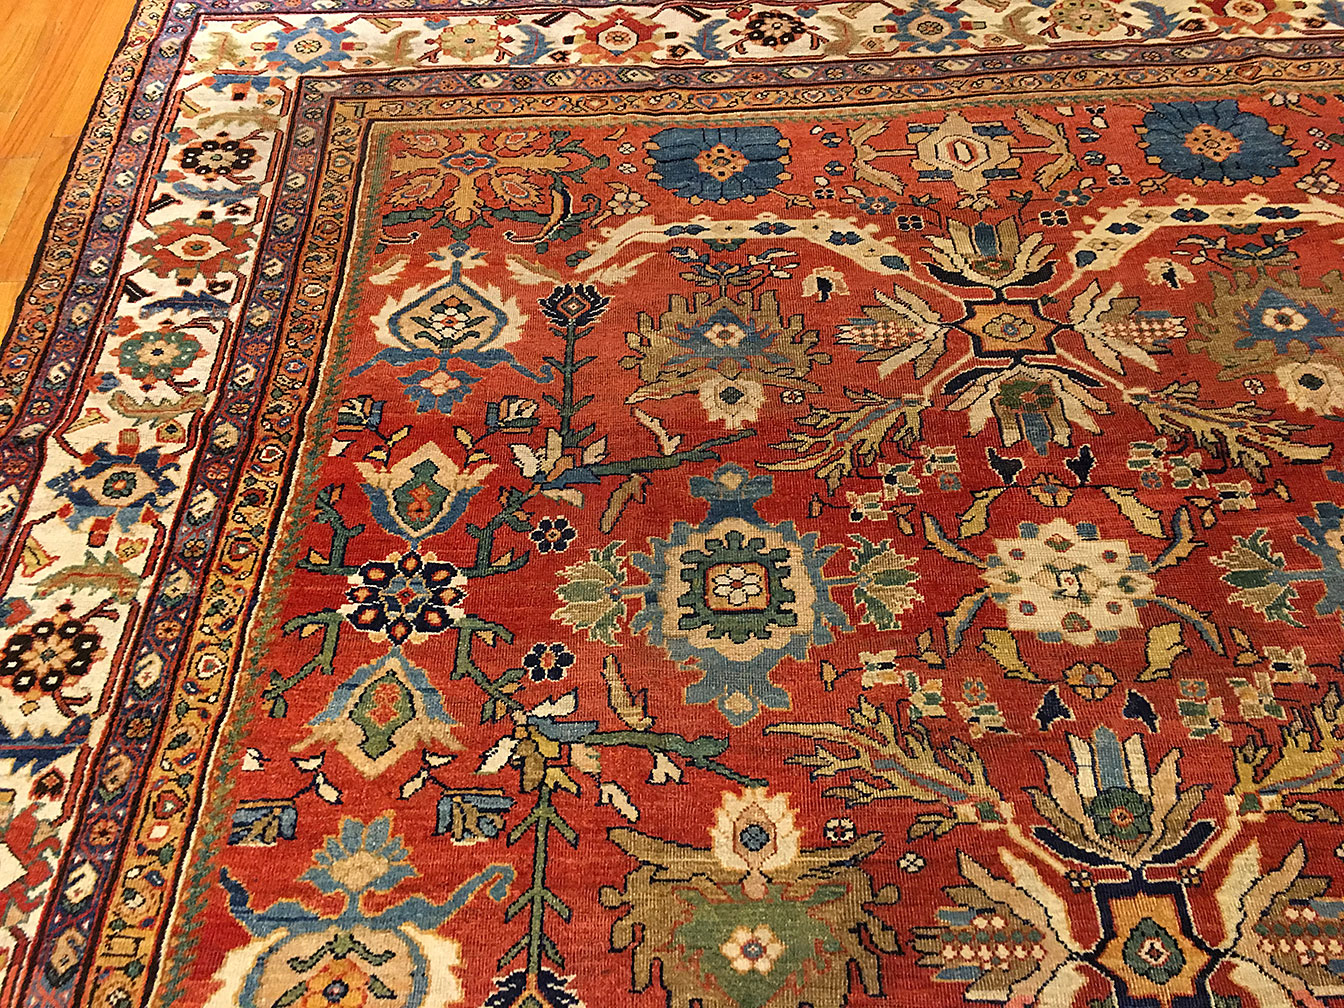 Antique sultan abad Carpet - # 51409